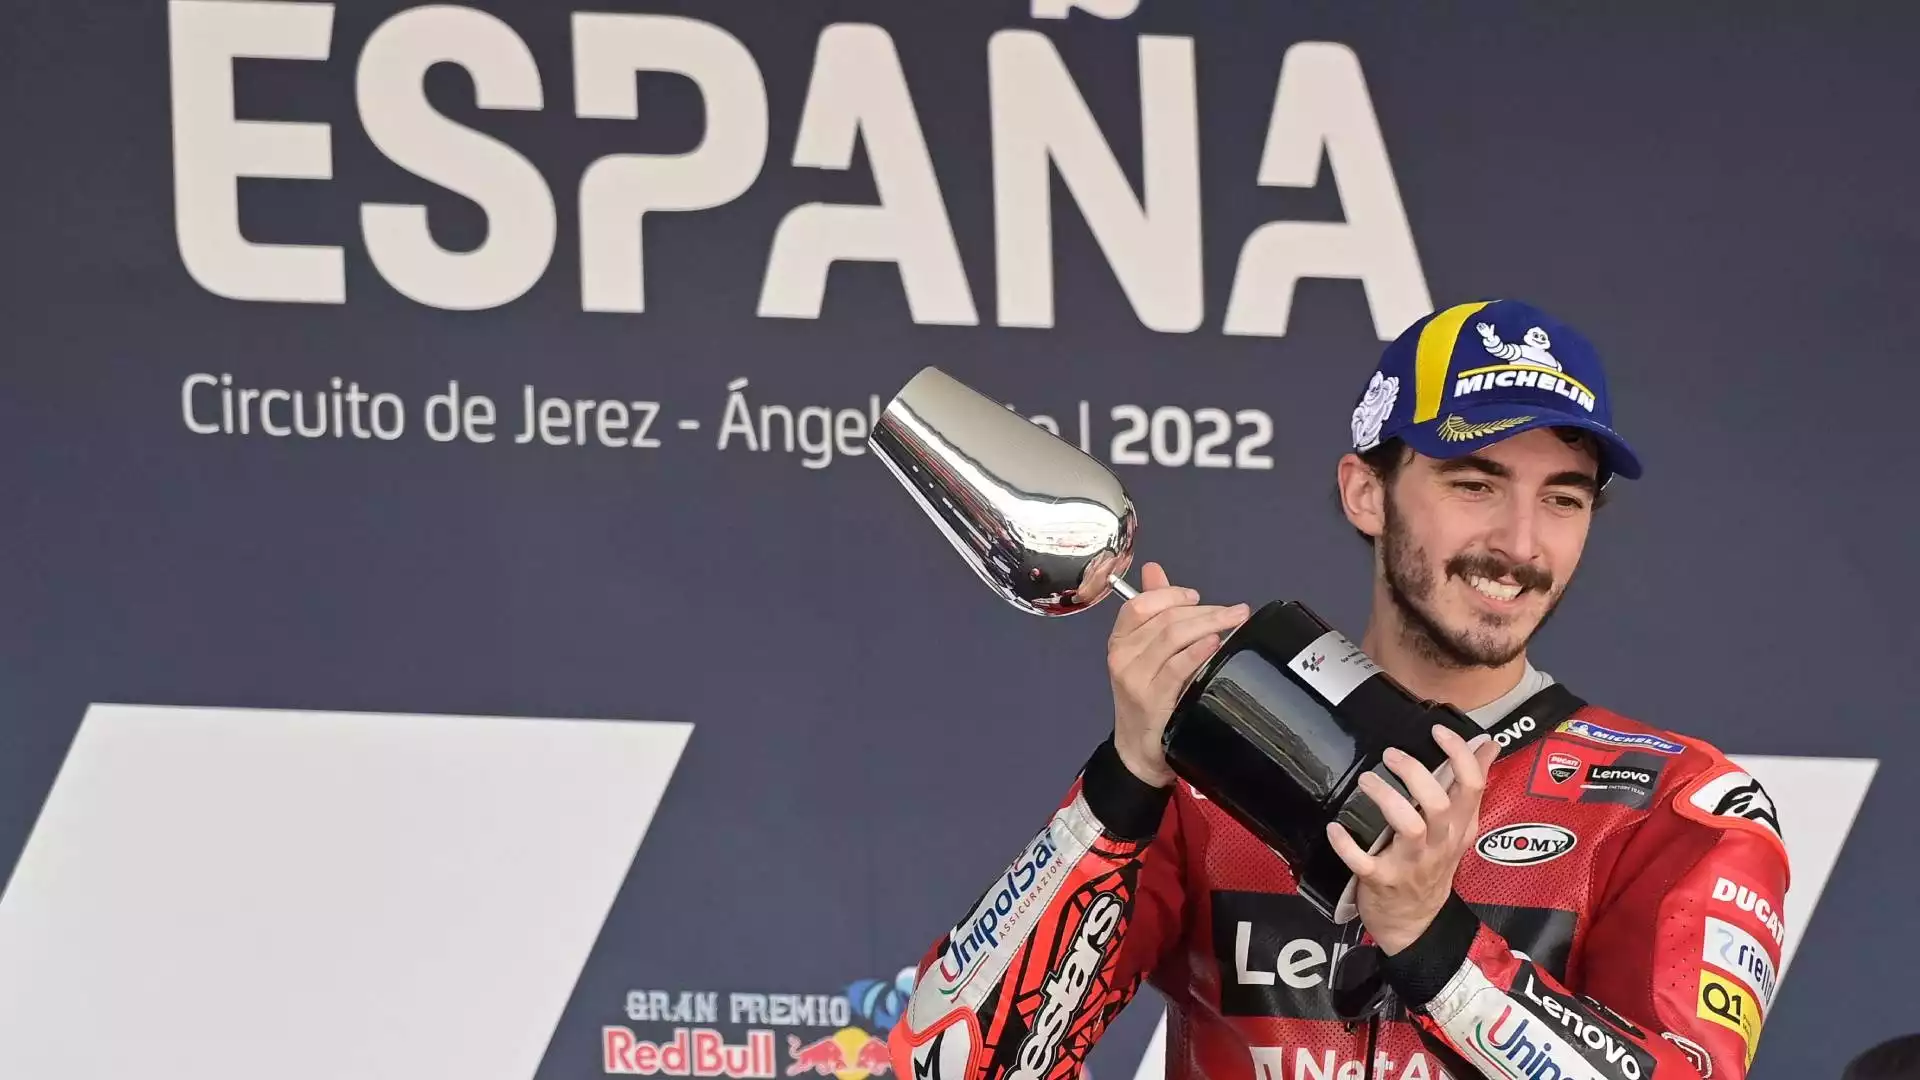 La stagione 2022 comincia con parecchie difficoltà per Bagnaia, tanto è vero che il primo successo arriva solo a maggio nel gran Premio di Spagna, a Jerez